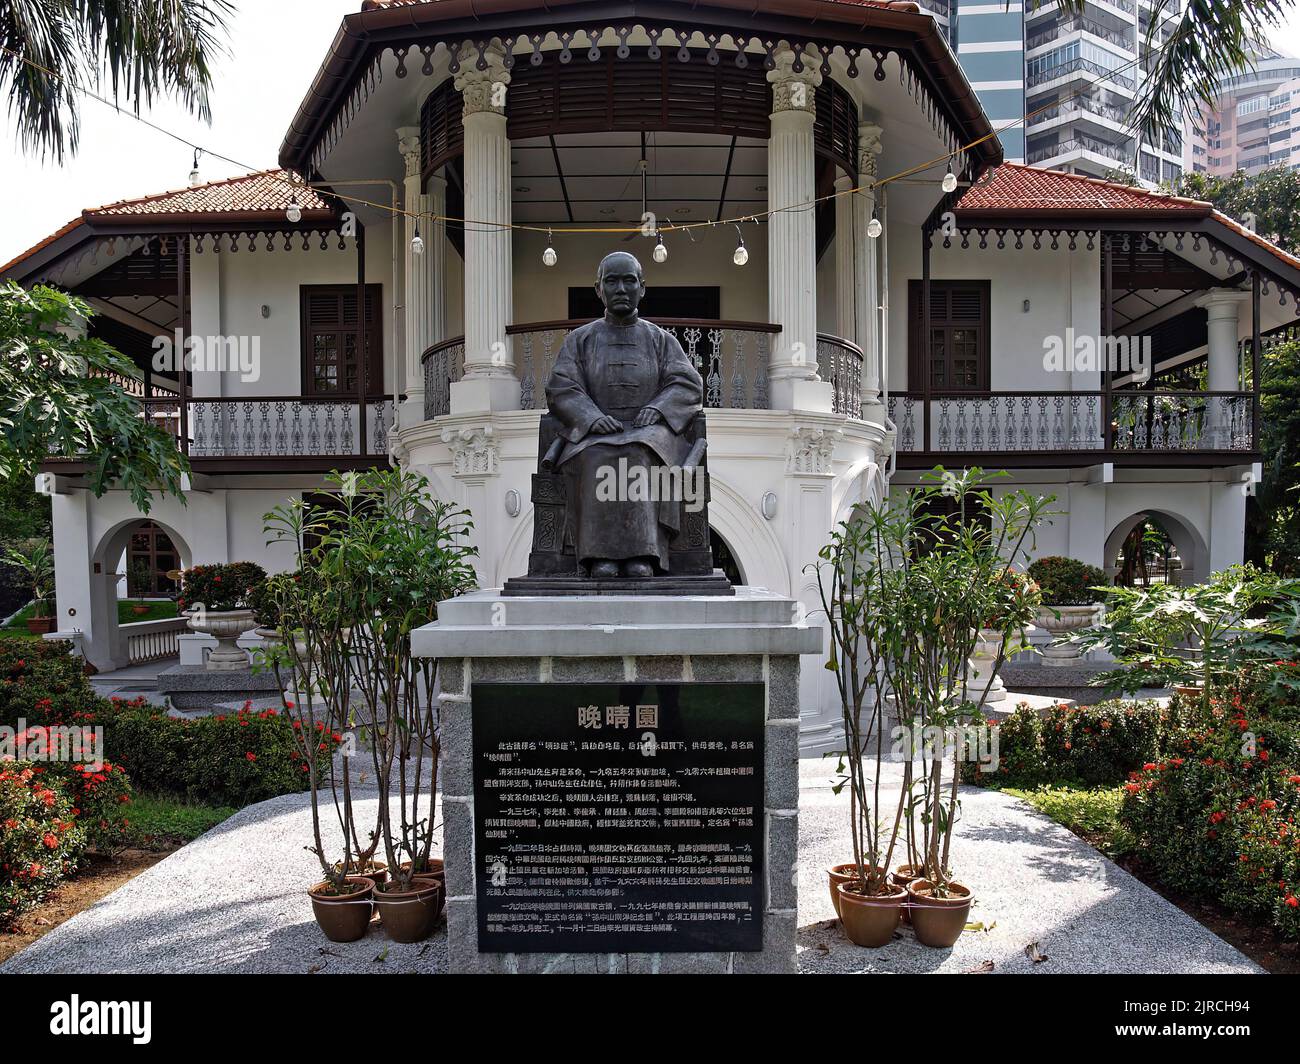 Statua di Dr.Sun Yat Sen a WAN Qing Yuan villa in Tai Gin Road, Singapore. La villa è servita come base per la rivoluzione cinese Dr. Sun Yat Sen nel 1907 Foto Stock